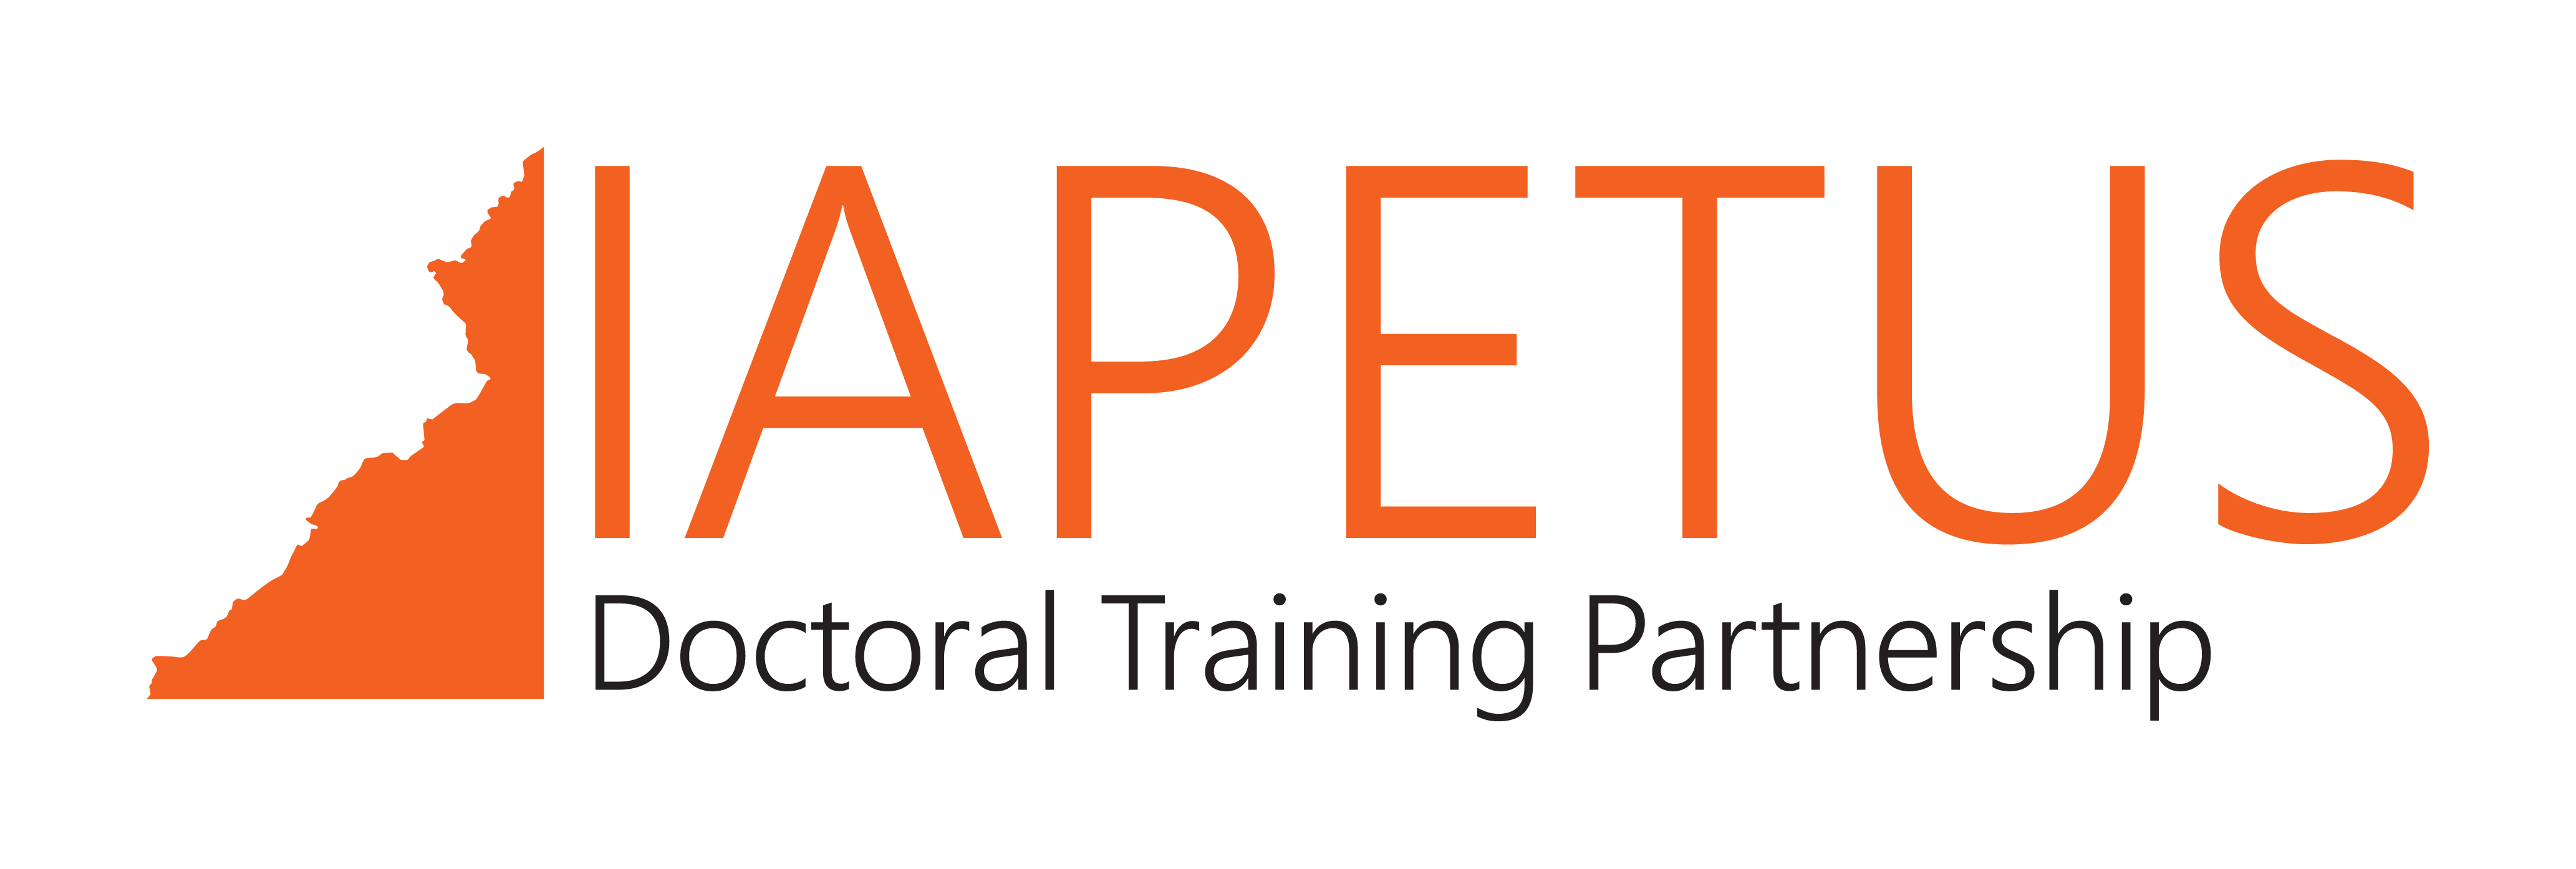 DTP Logo - Iapetus